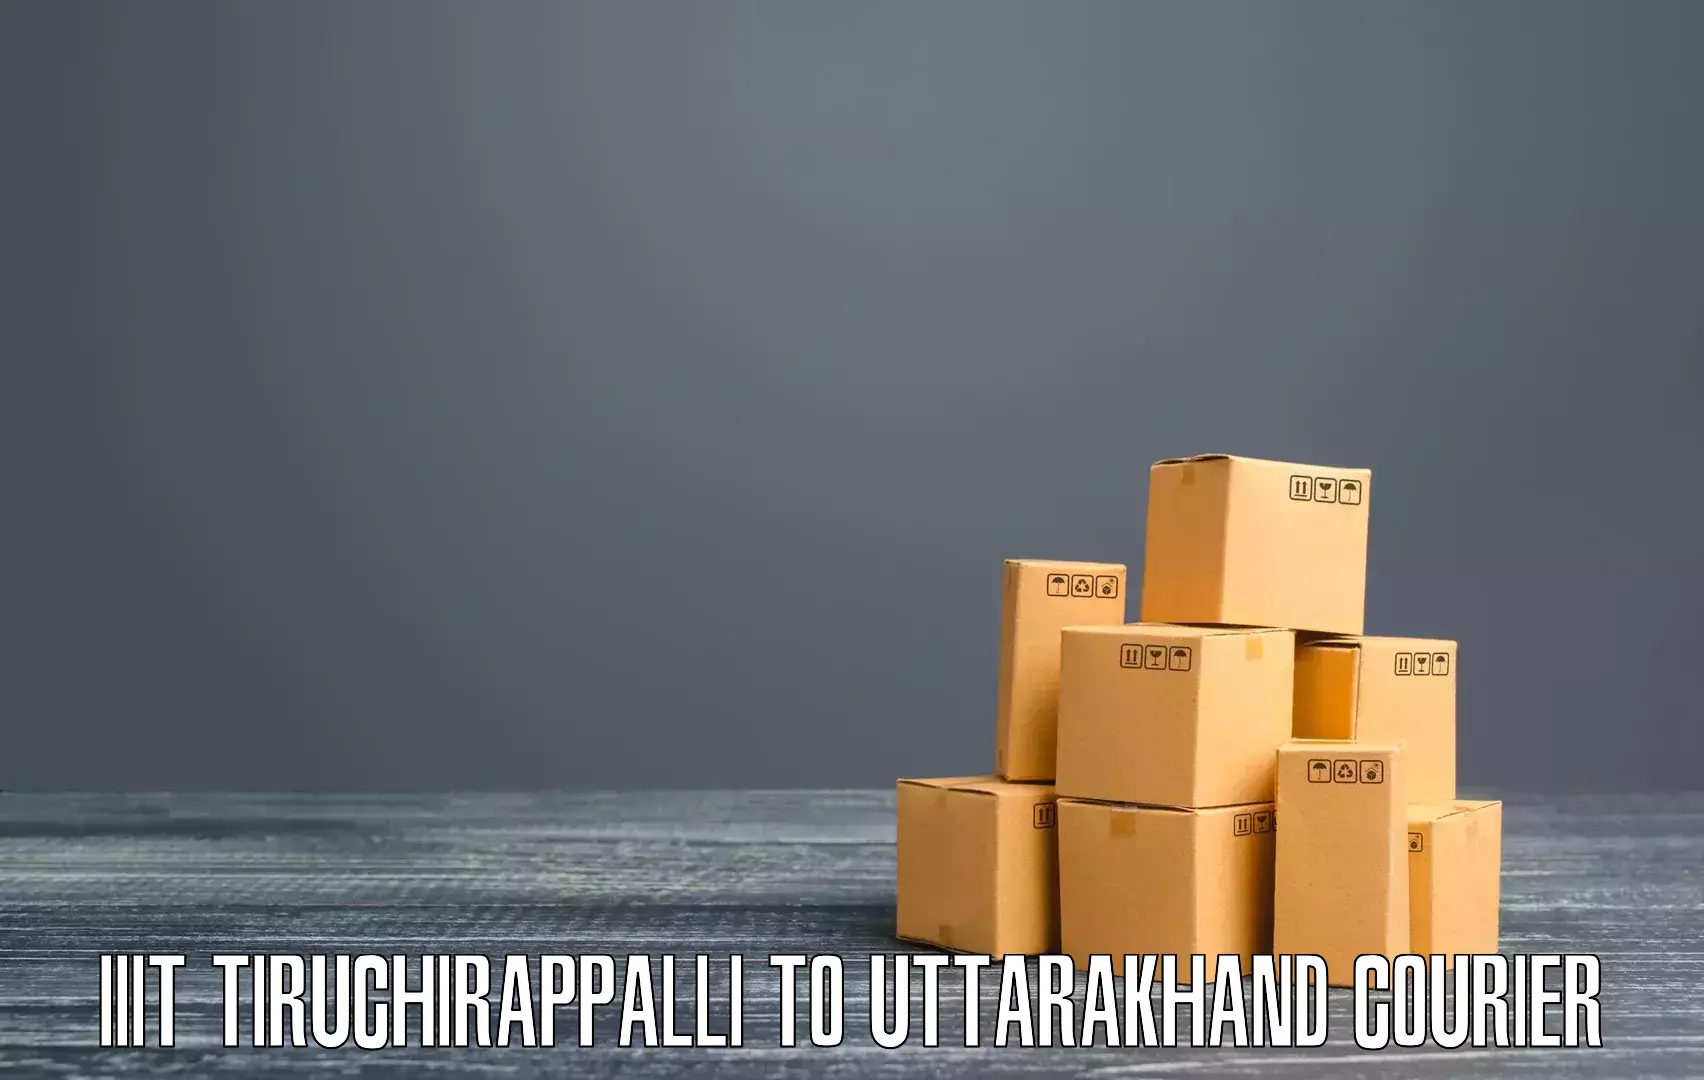 Courier service innovation IIIT Tiruchirappalli to Karnaprayag